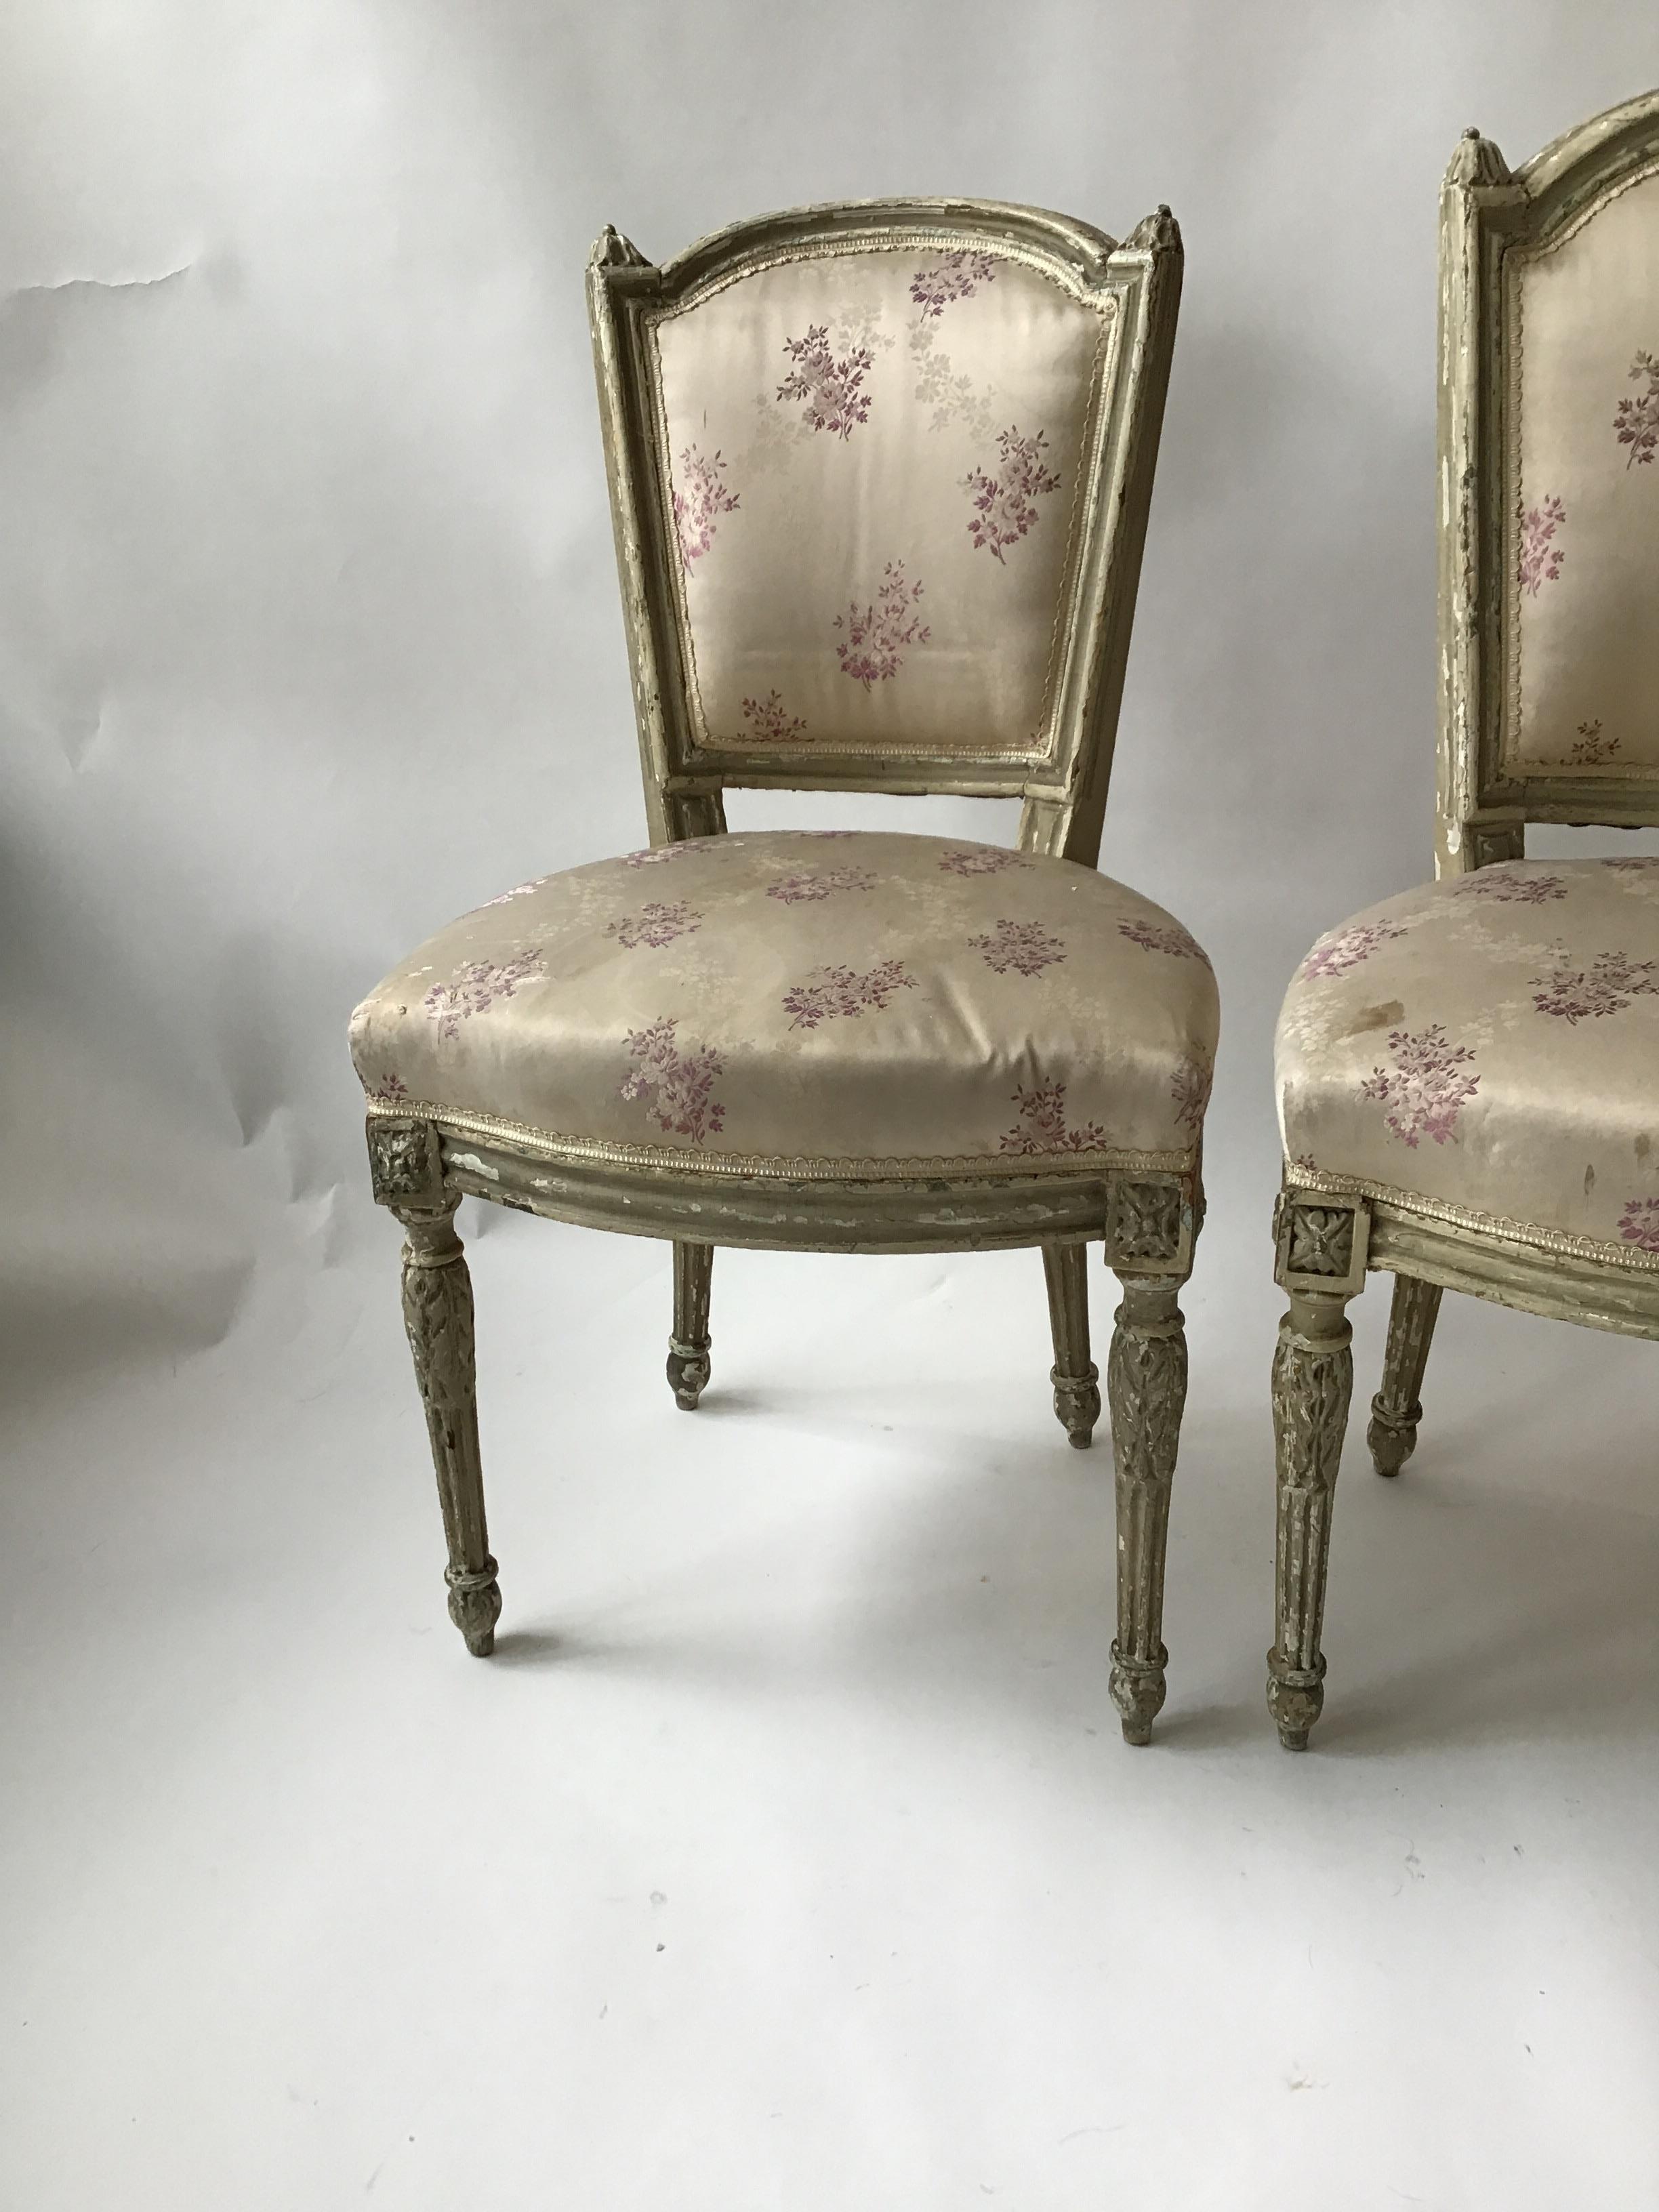 Paire de chaises latérales Louis XVI des années 1870. Une chaise est plus haute que l'autre. Le plus grand était pour l'homme, le plus petit, pour la femme.